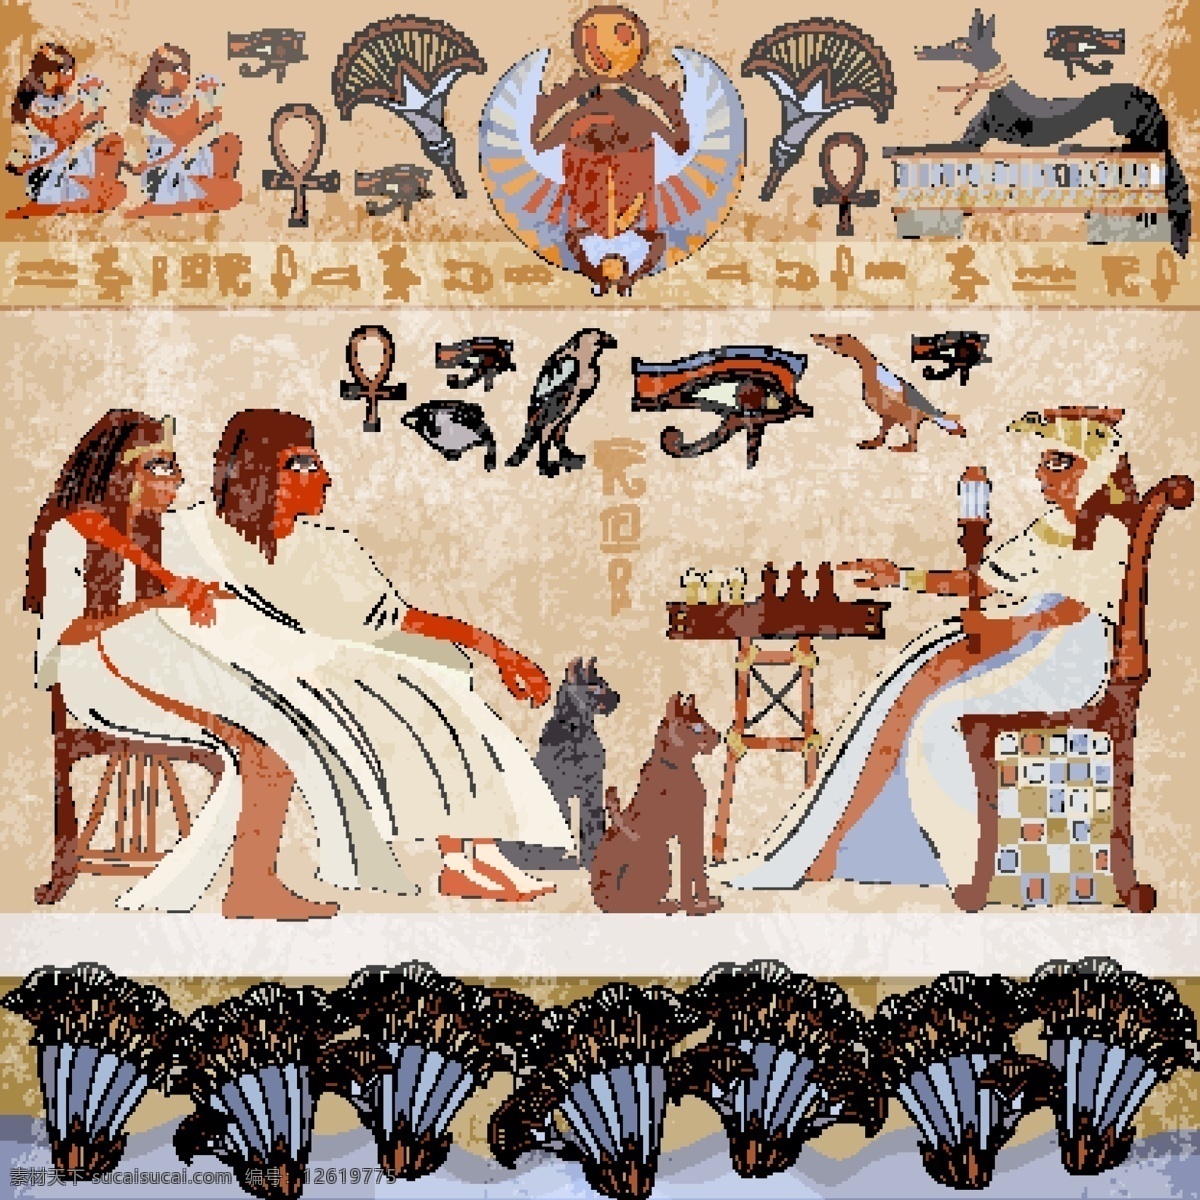 埃及图案 埃及 图文 适量 埃及图文 金字塔 平面 文化艺术 传统文化